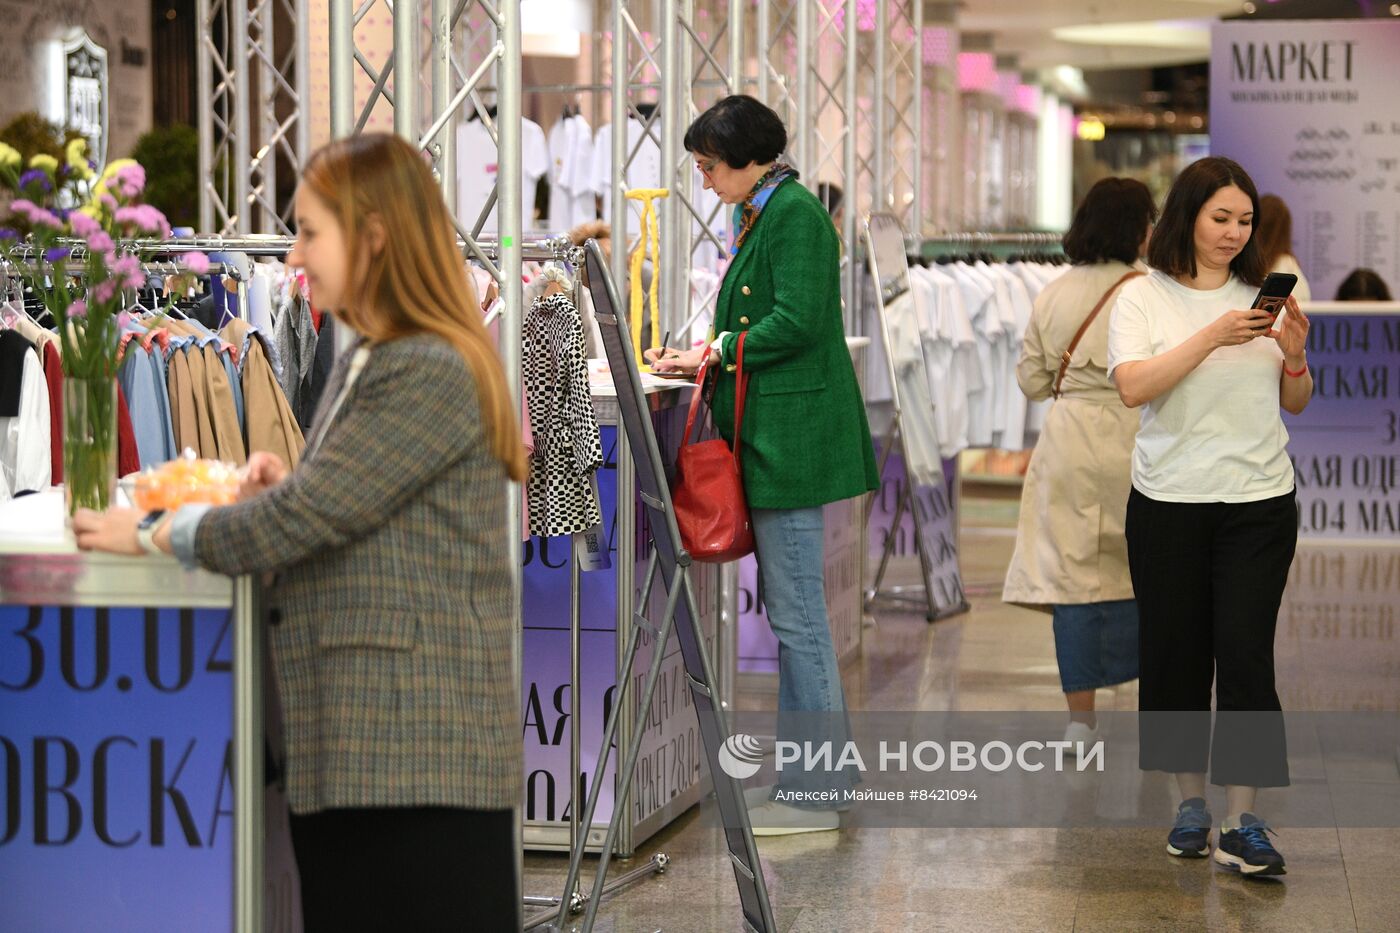 Открытие маркетов Московской недели моды